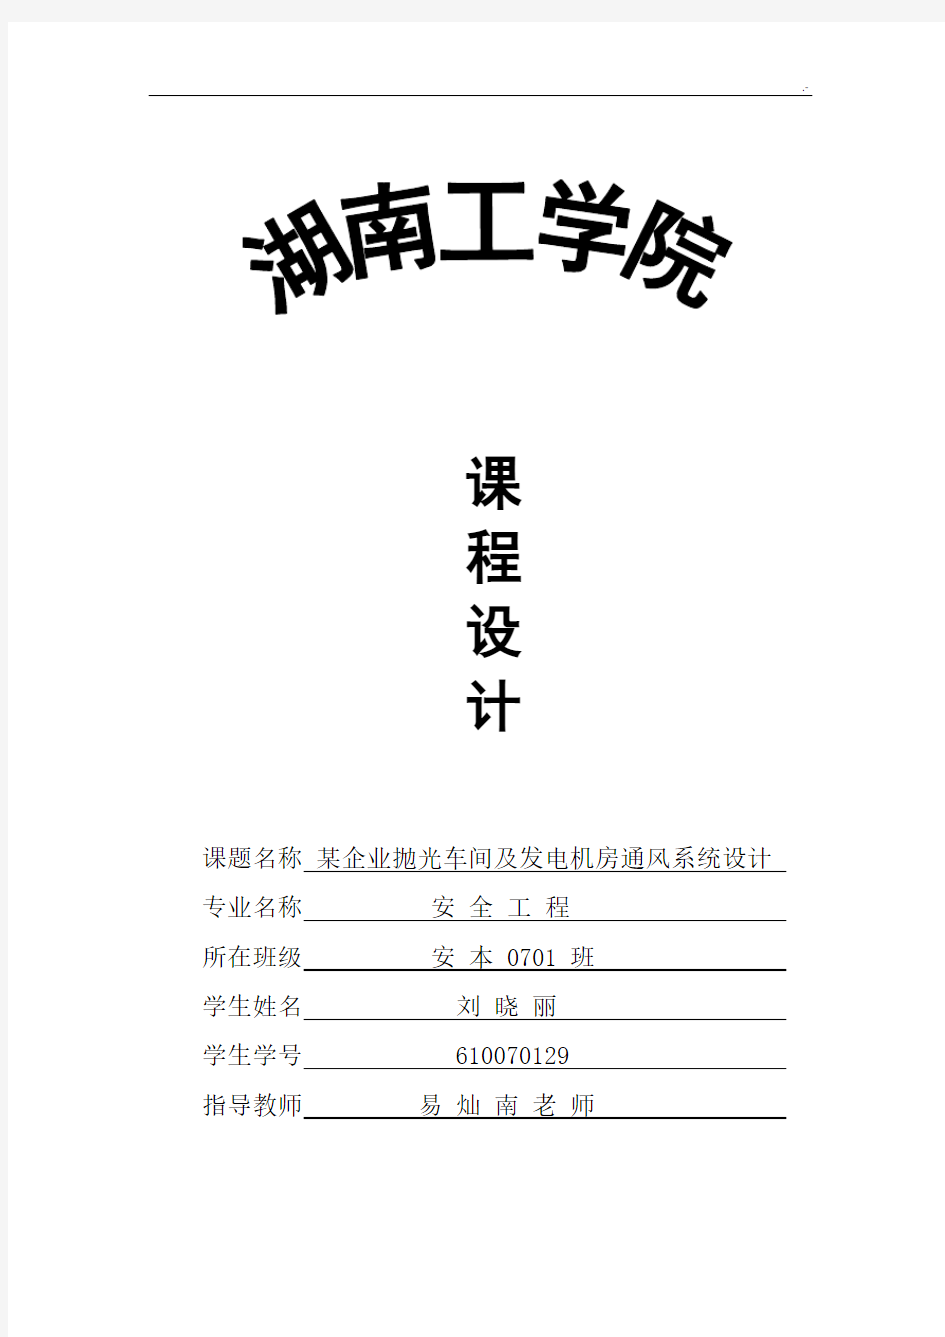 工业通风课程教学设计正文(刘晓丽)